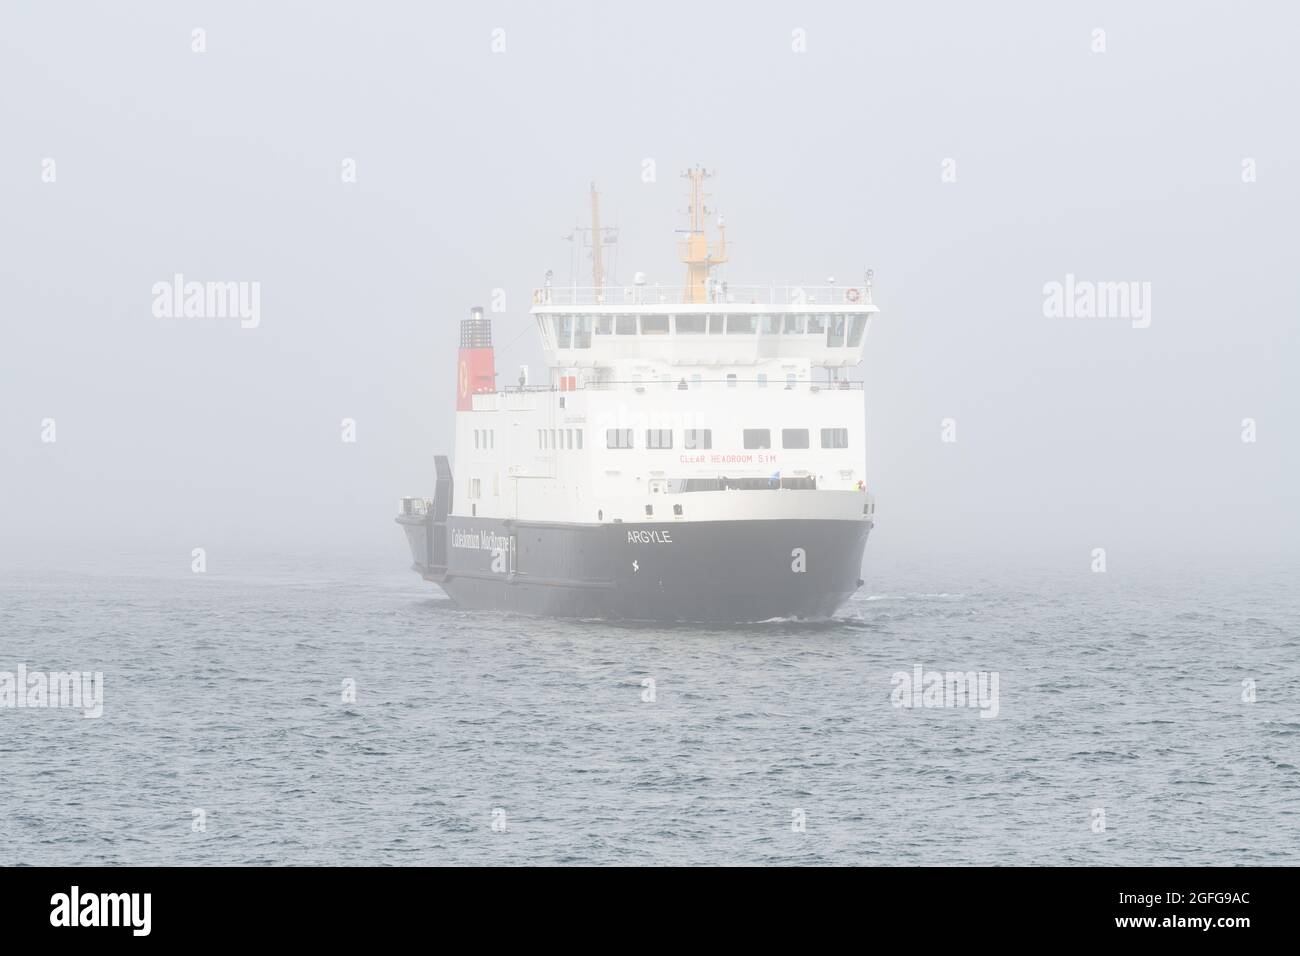 Ferry voile dans le brouillard - CalMac (Caledonian MacBrayne) MV ferry Argyle arrivant à Wemyss Bay de Rothesay, île de Bute dans le brouillard - Écosse, Royaume-Uni Banque D'Images